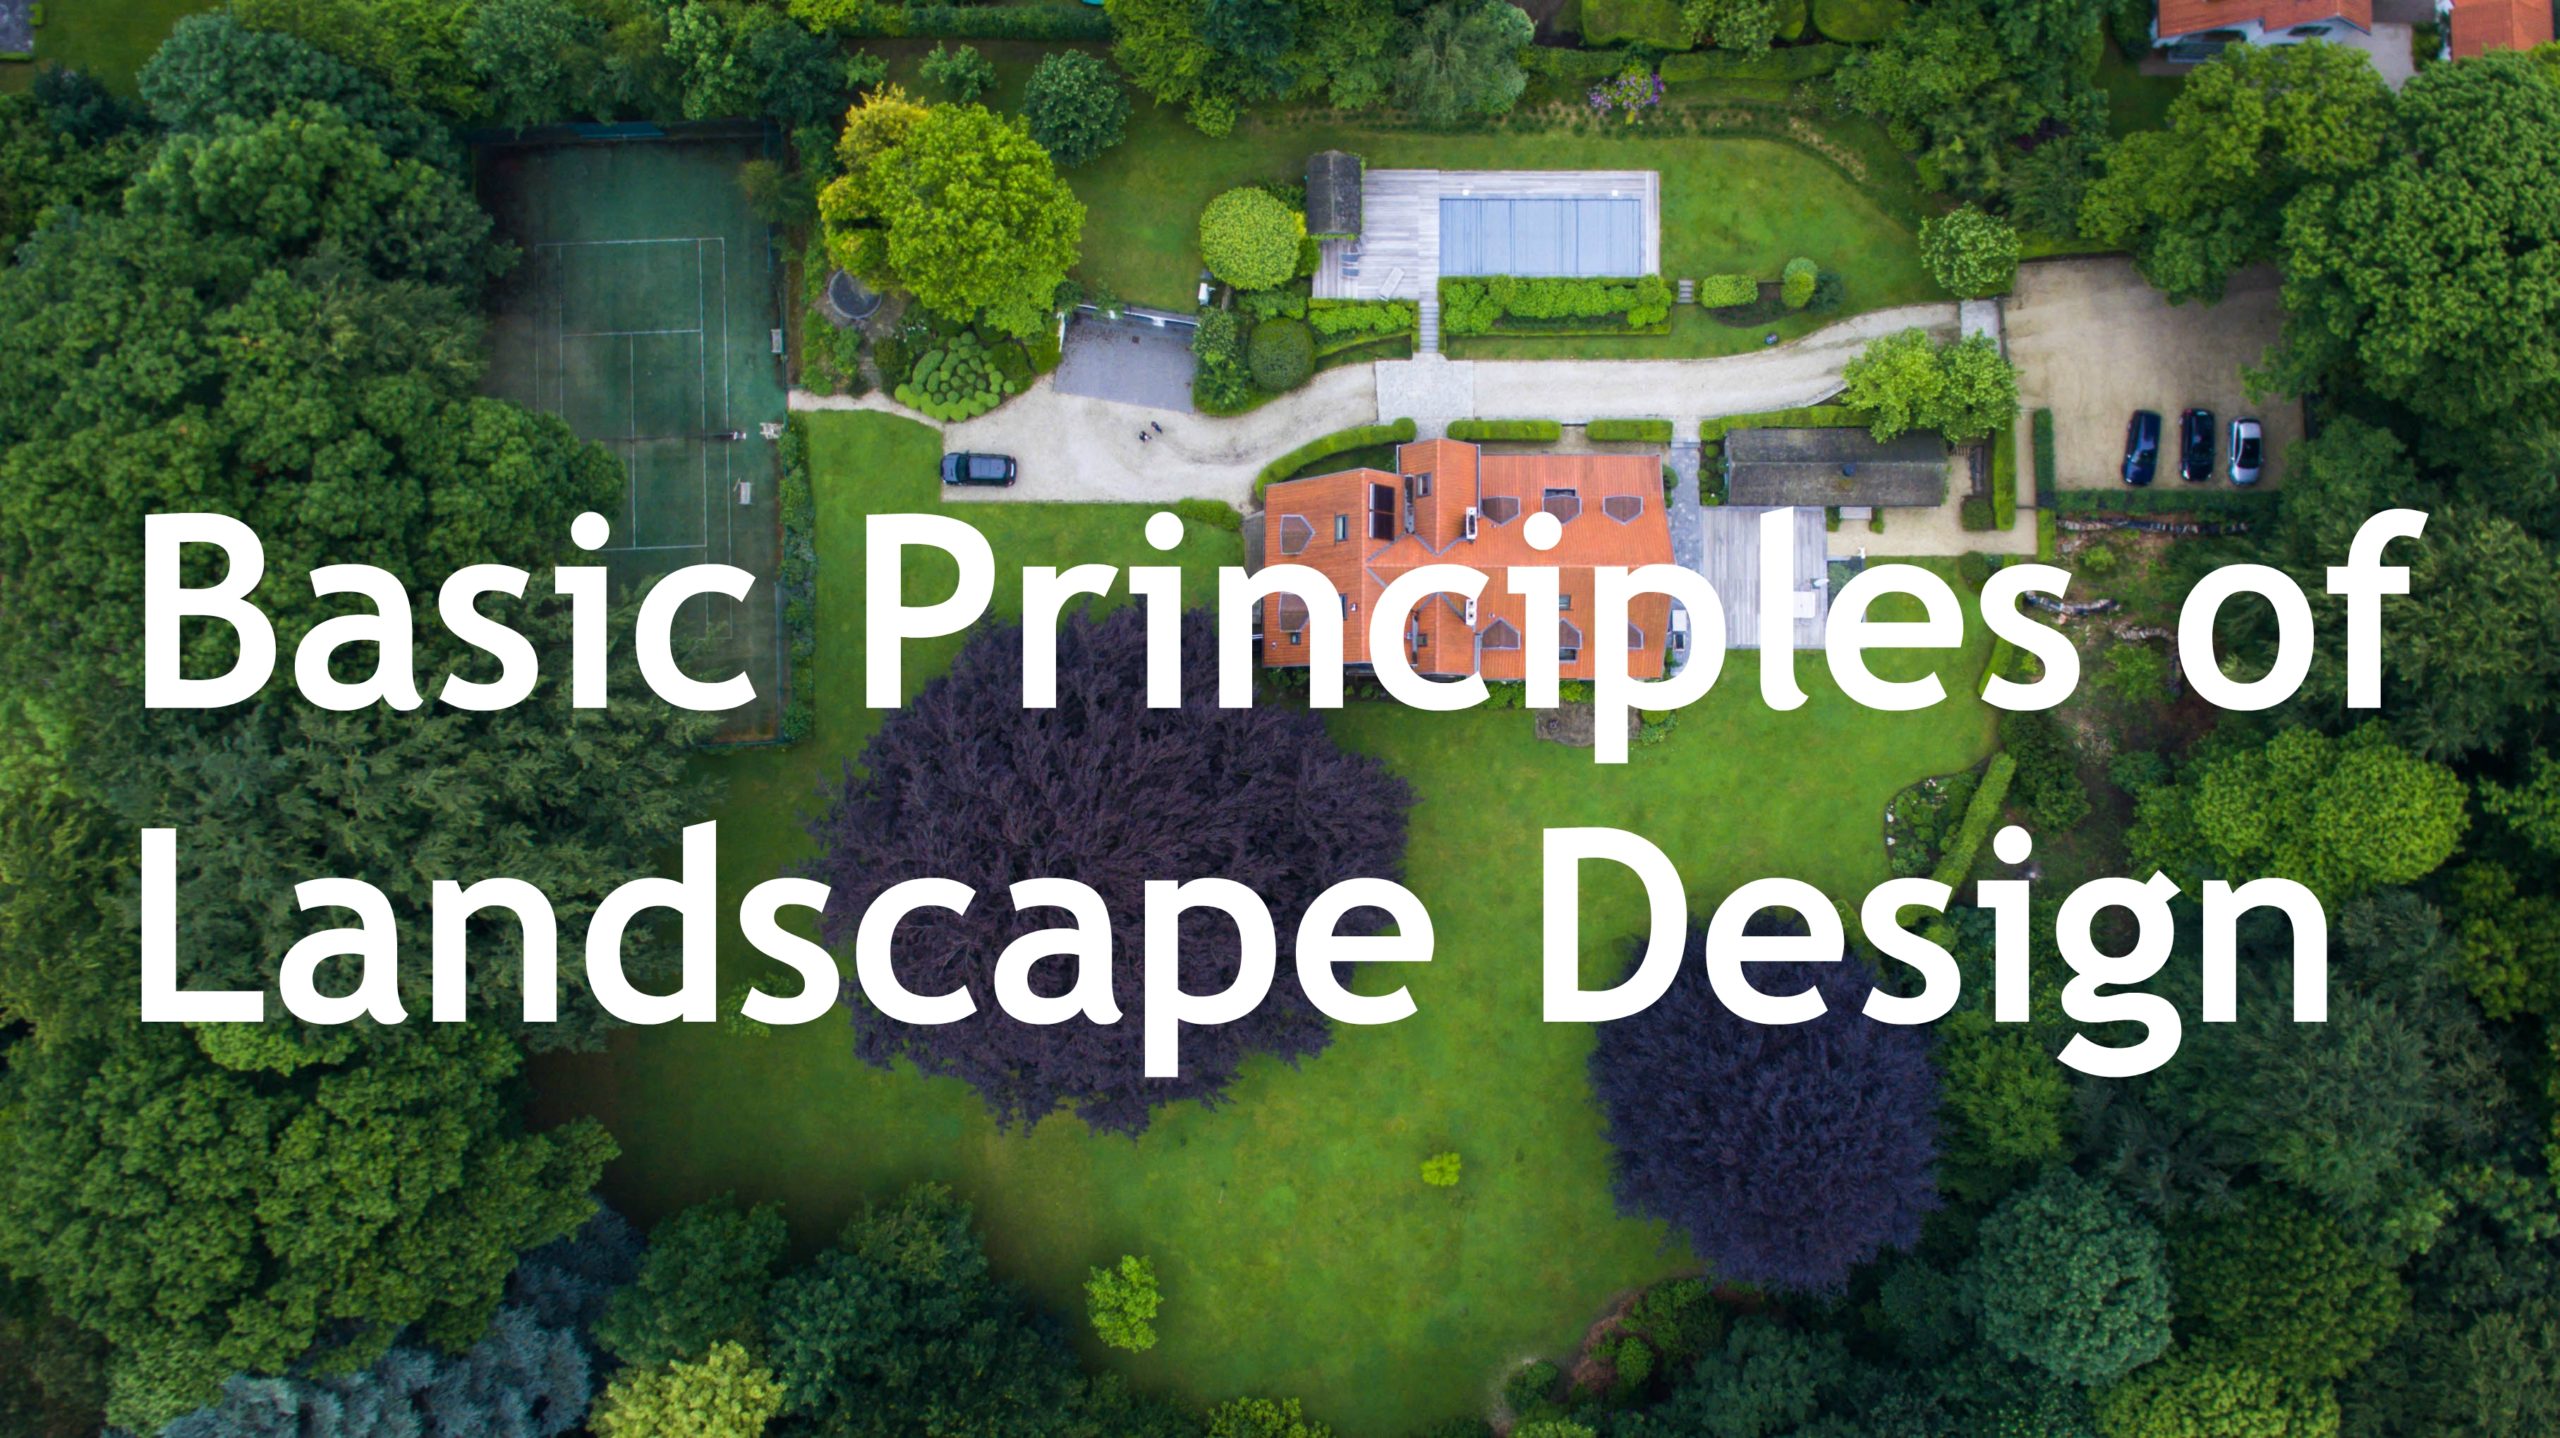 Basic Principles of Landscape Design